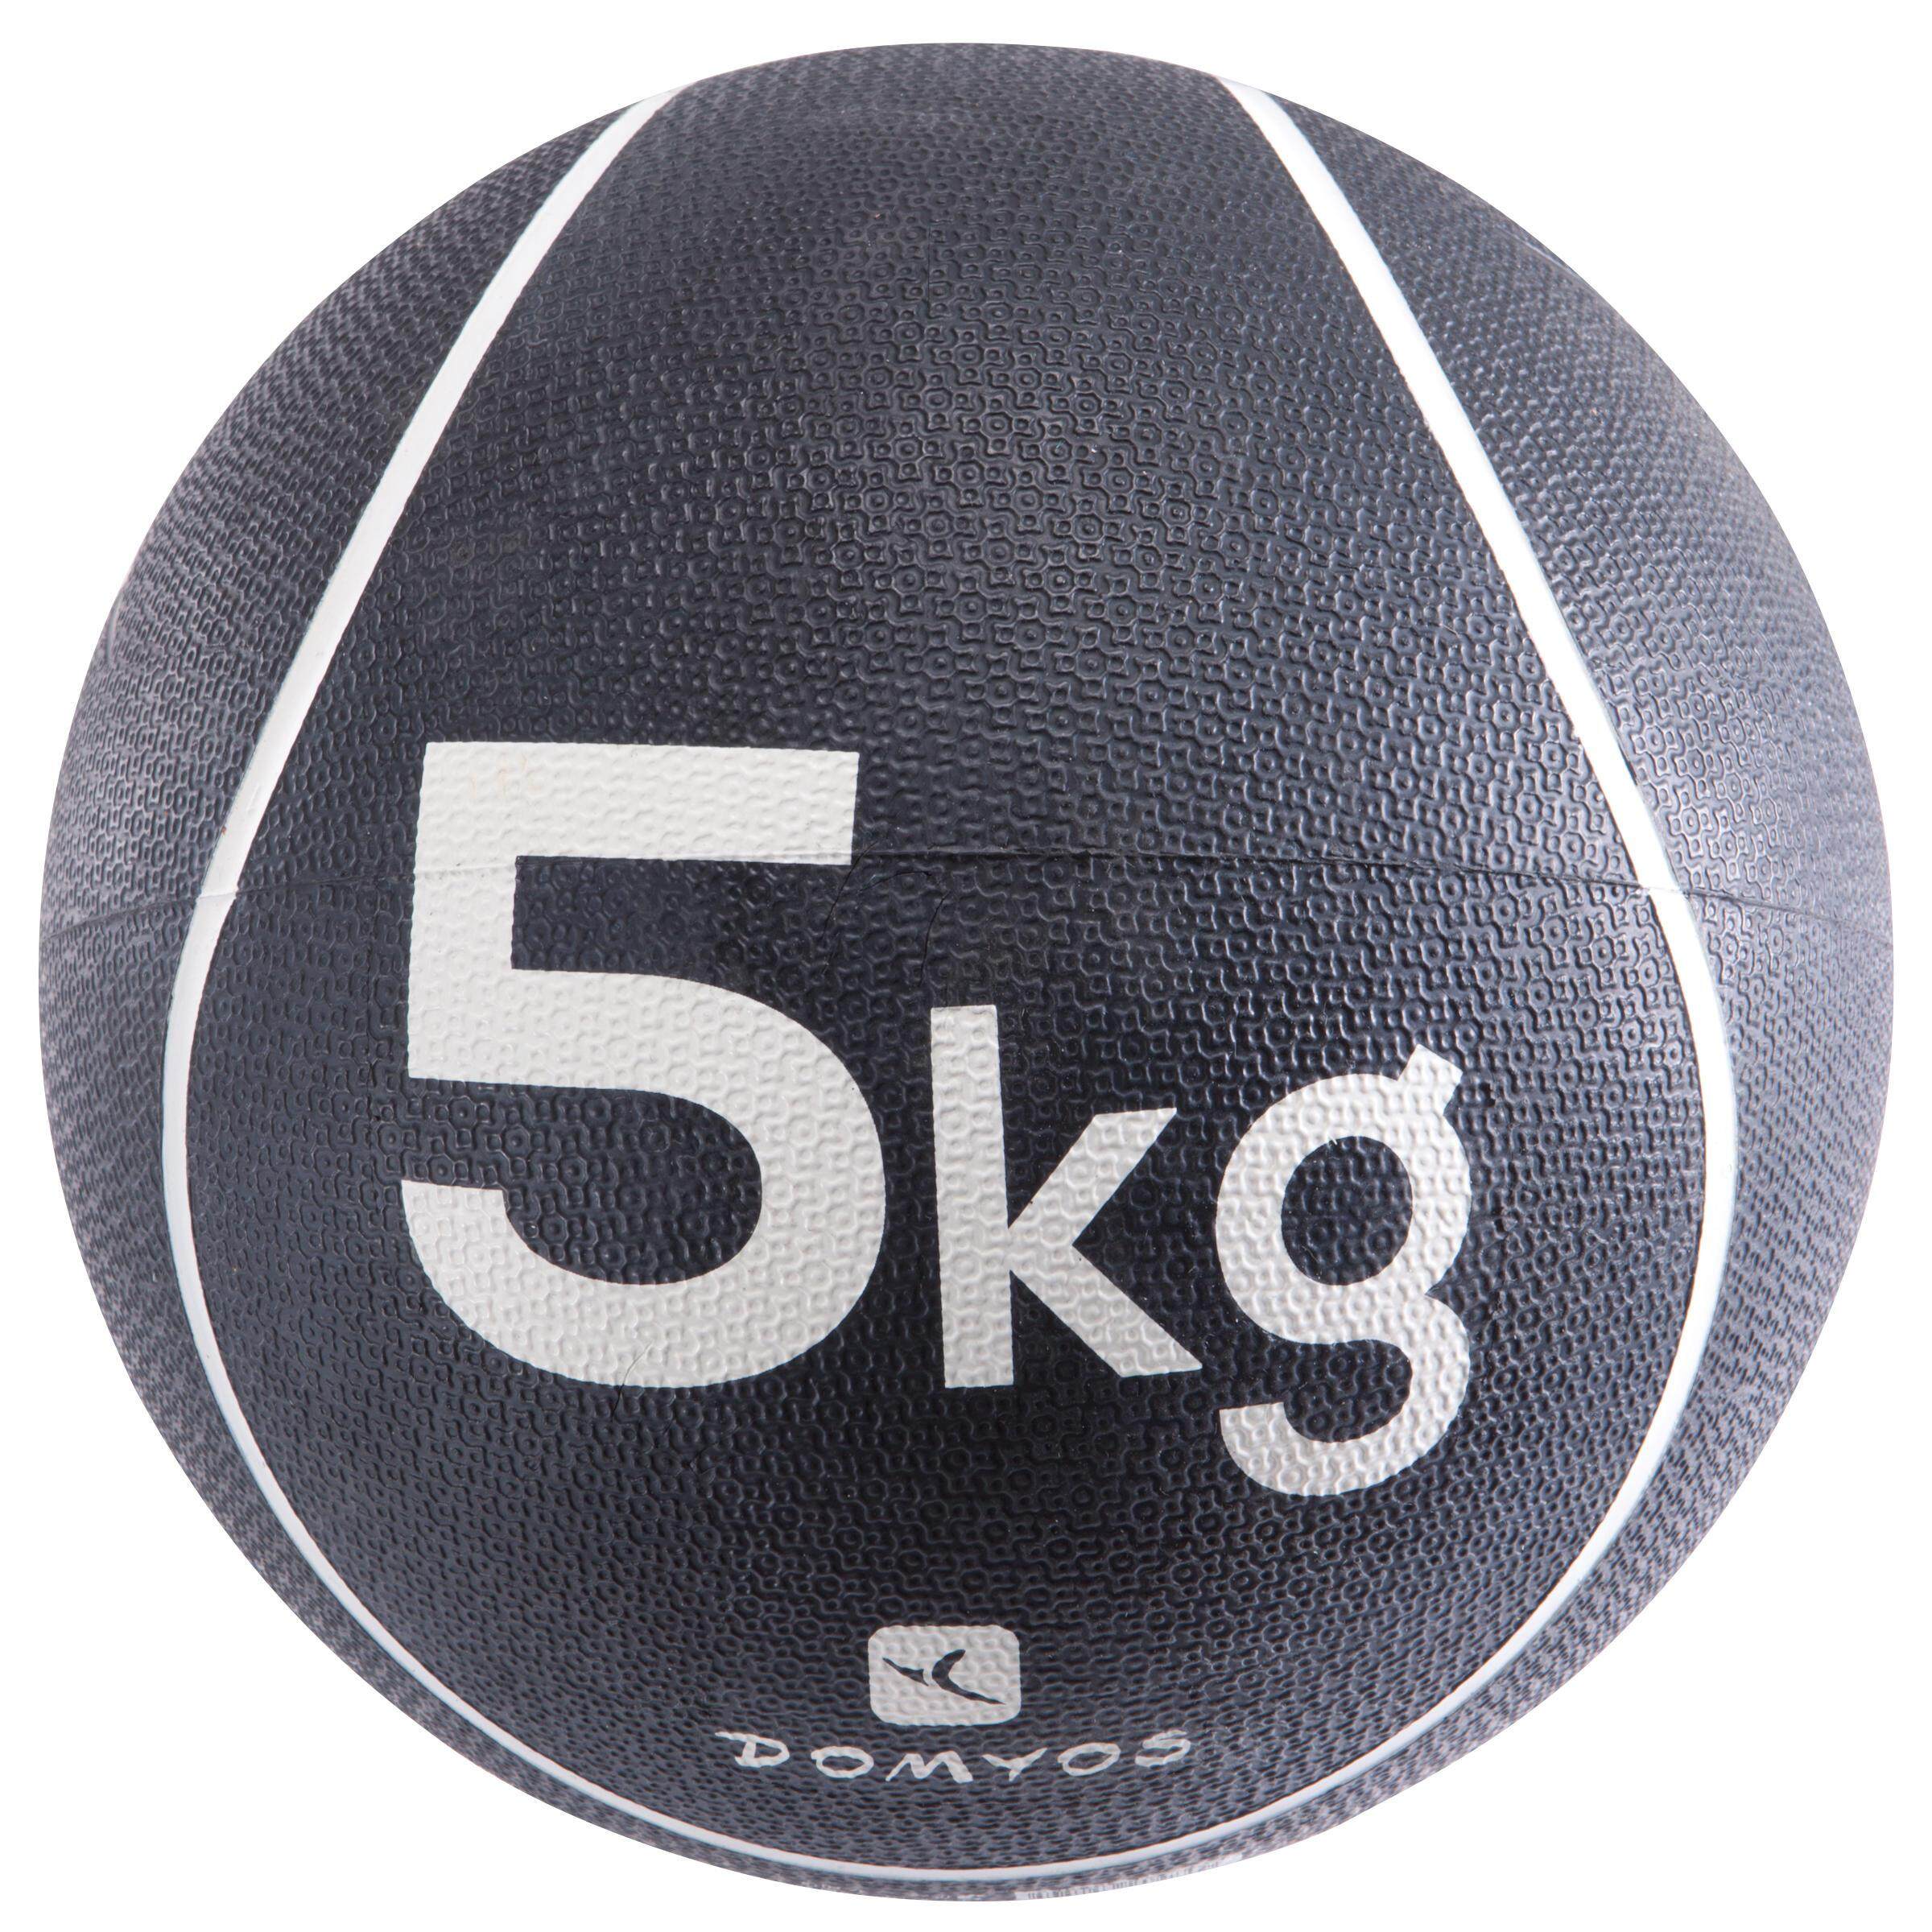 [ด่วน!! โปรโมชั่นมีจำนวนจำกัด] ลูกบอลน้ำหนัก 5 กก. สำหรับการเล่นพิลาทิสเพื่อกระชับสัดส่วน สำหรับ ยิมนาสติกพิลาทิส